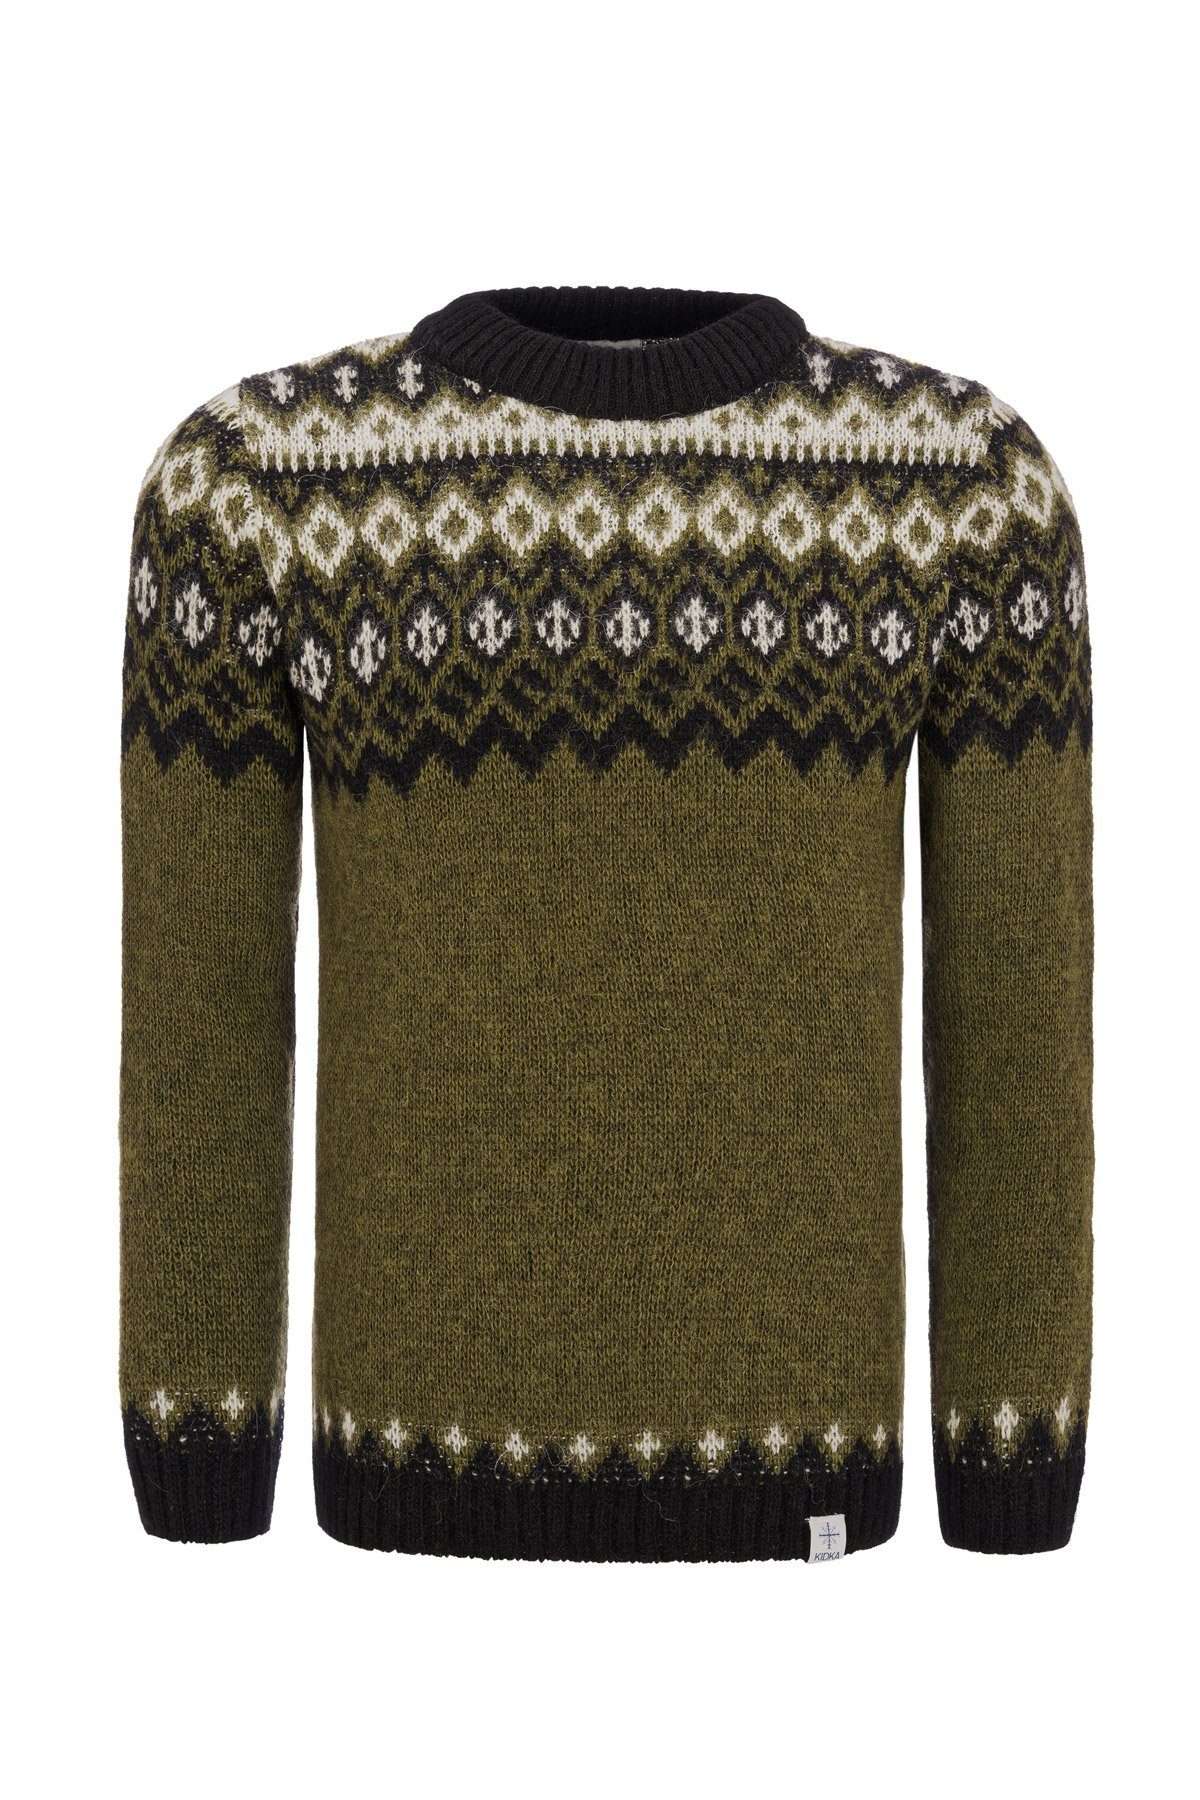 Норвежский свитер малыш-134 из исландской натуральной шерсти.